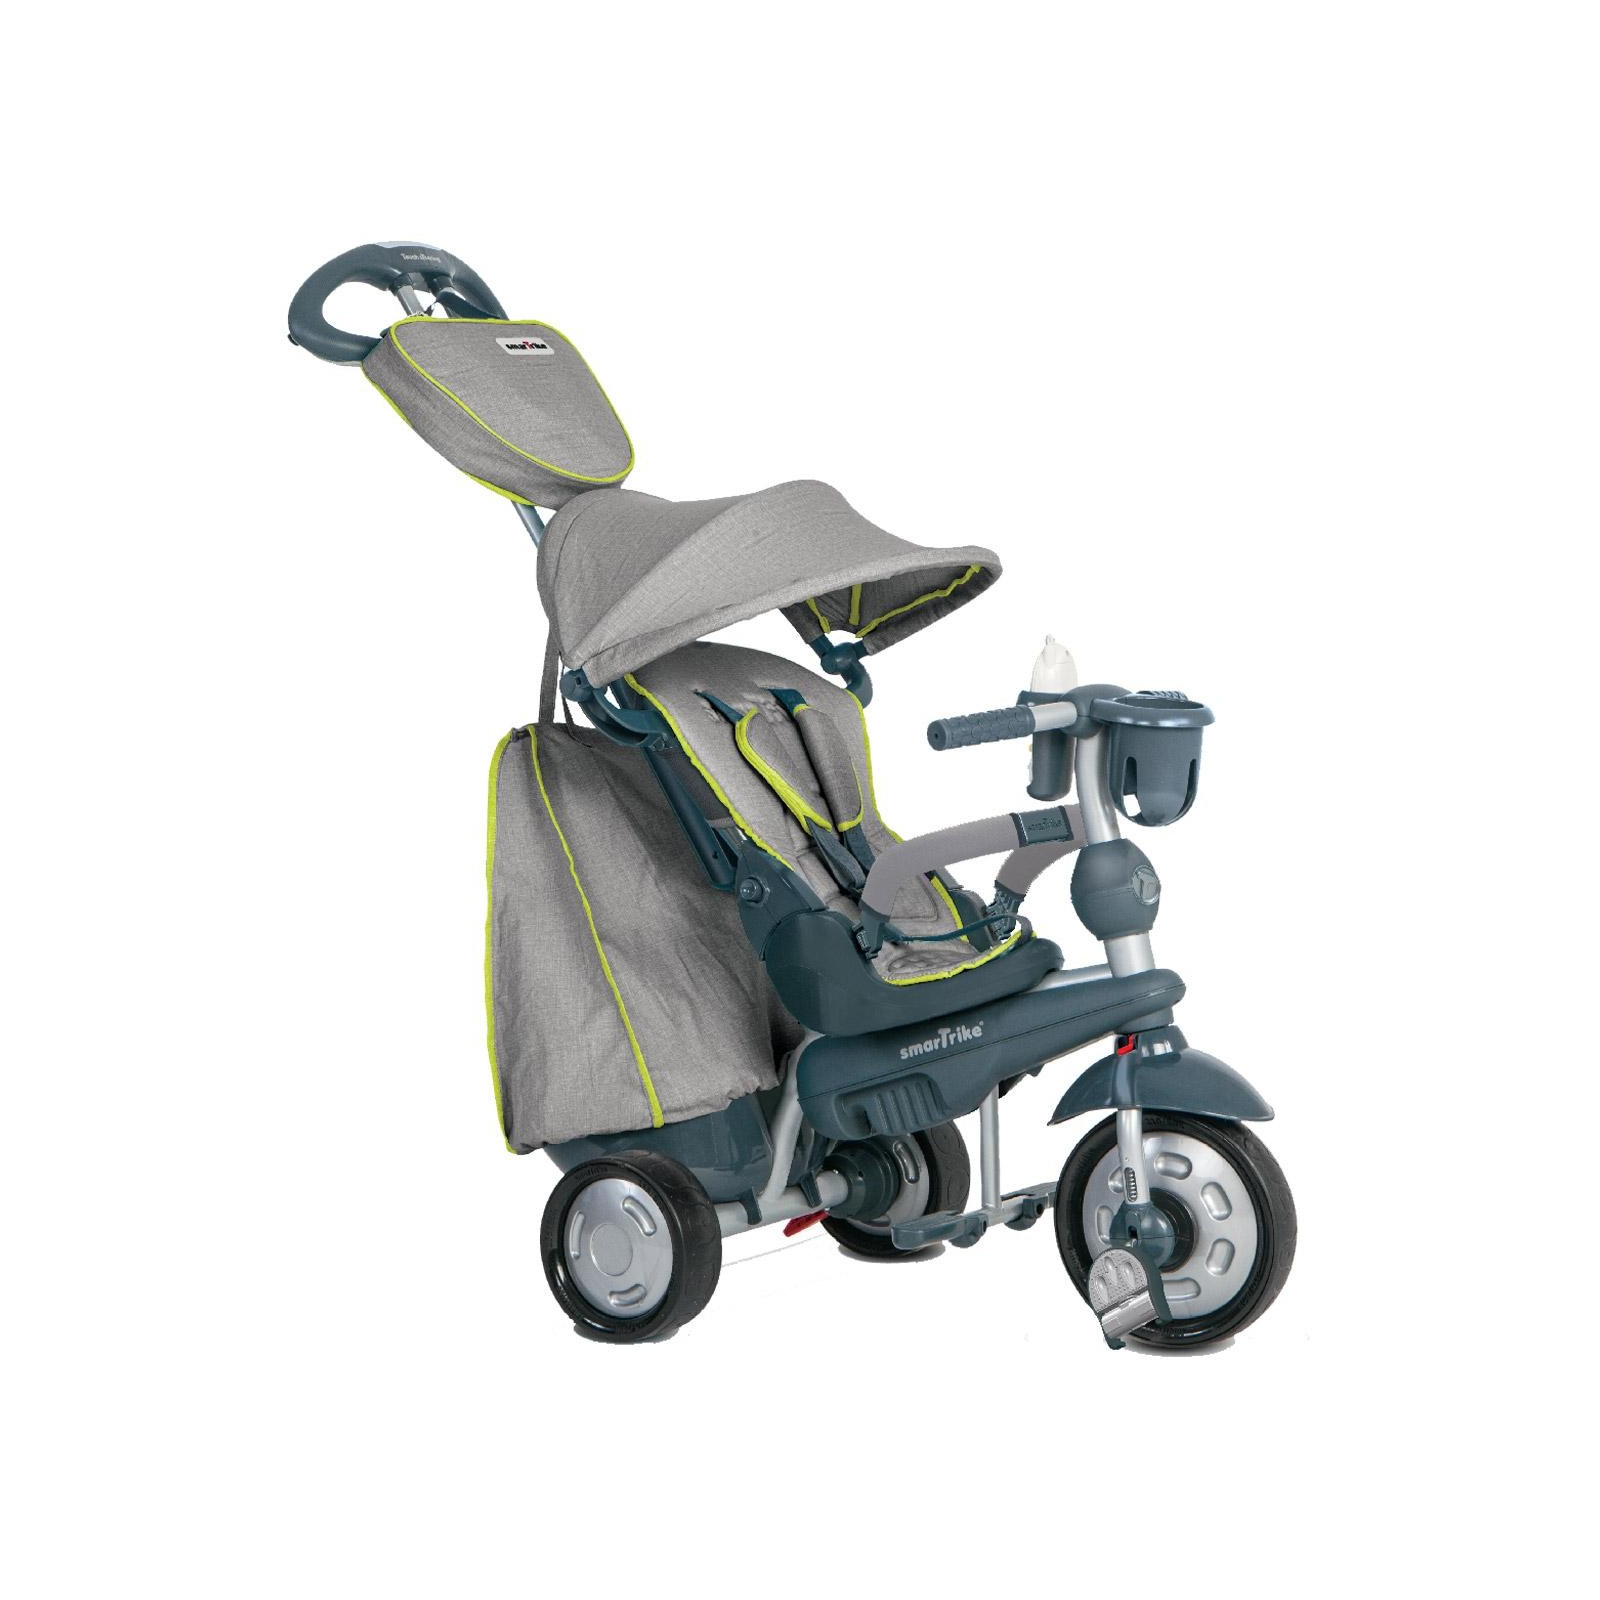 Детский велосипед Smart Trike Explorer 5 в 1 Grey (8200900)